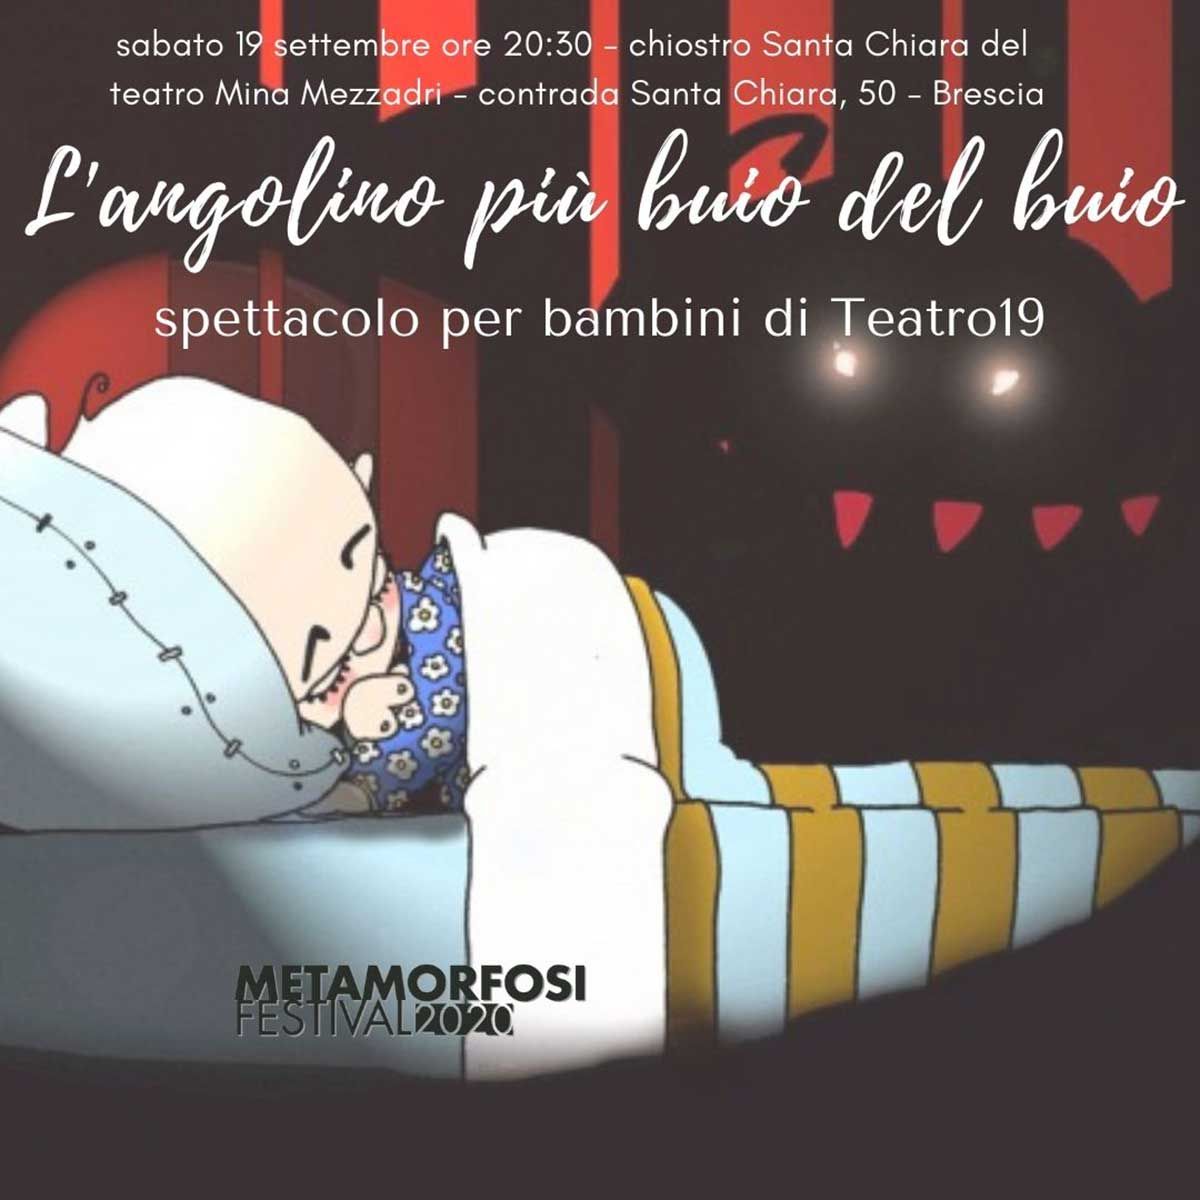 Langolino-piu-buio-del-buio-metamorfosi-festival-2020